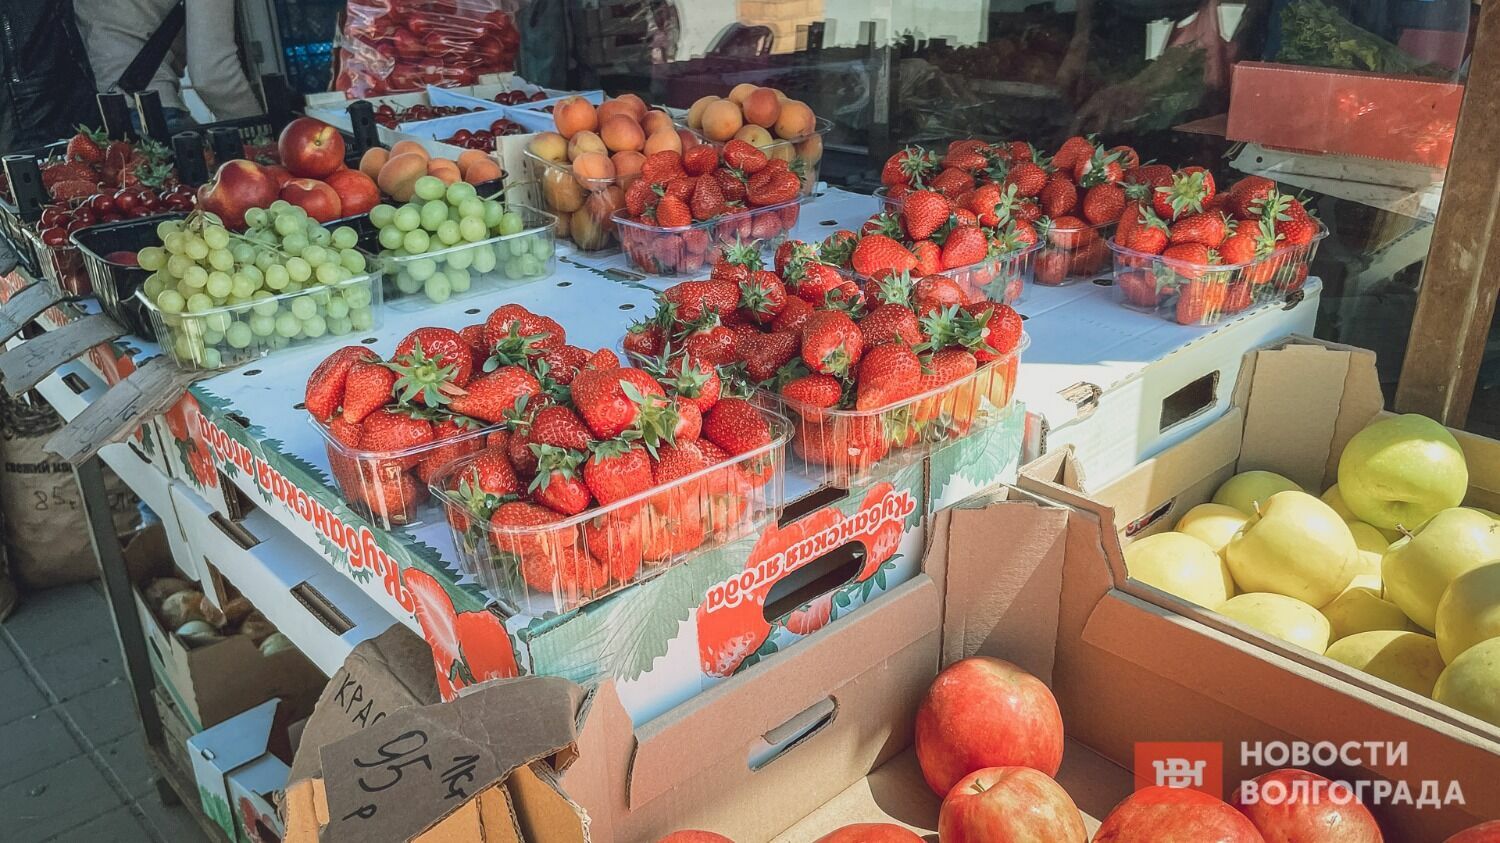 Хотя клубники и много, местной ягоды на рынках Волгограда пока не сыщешь